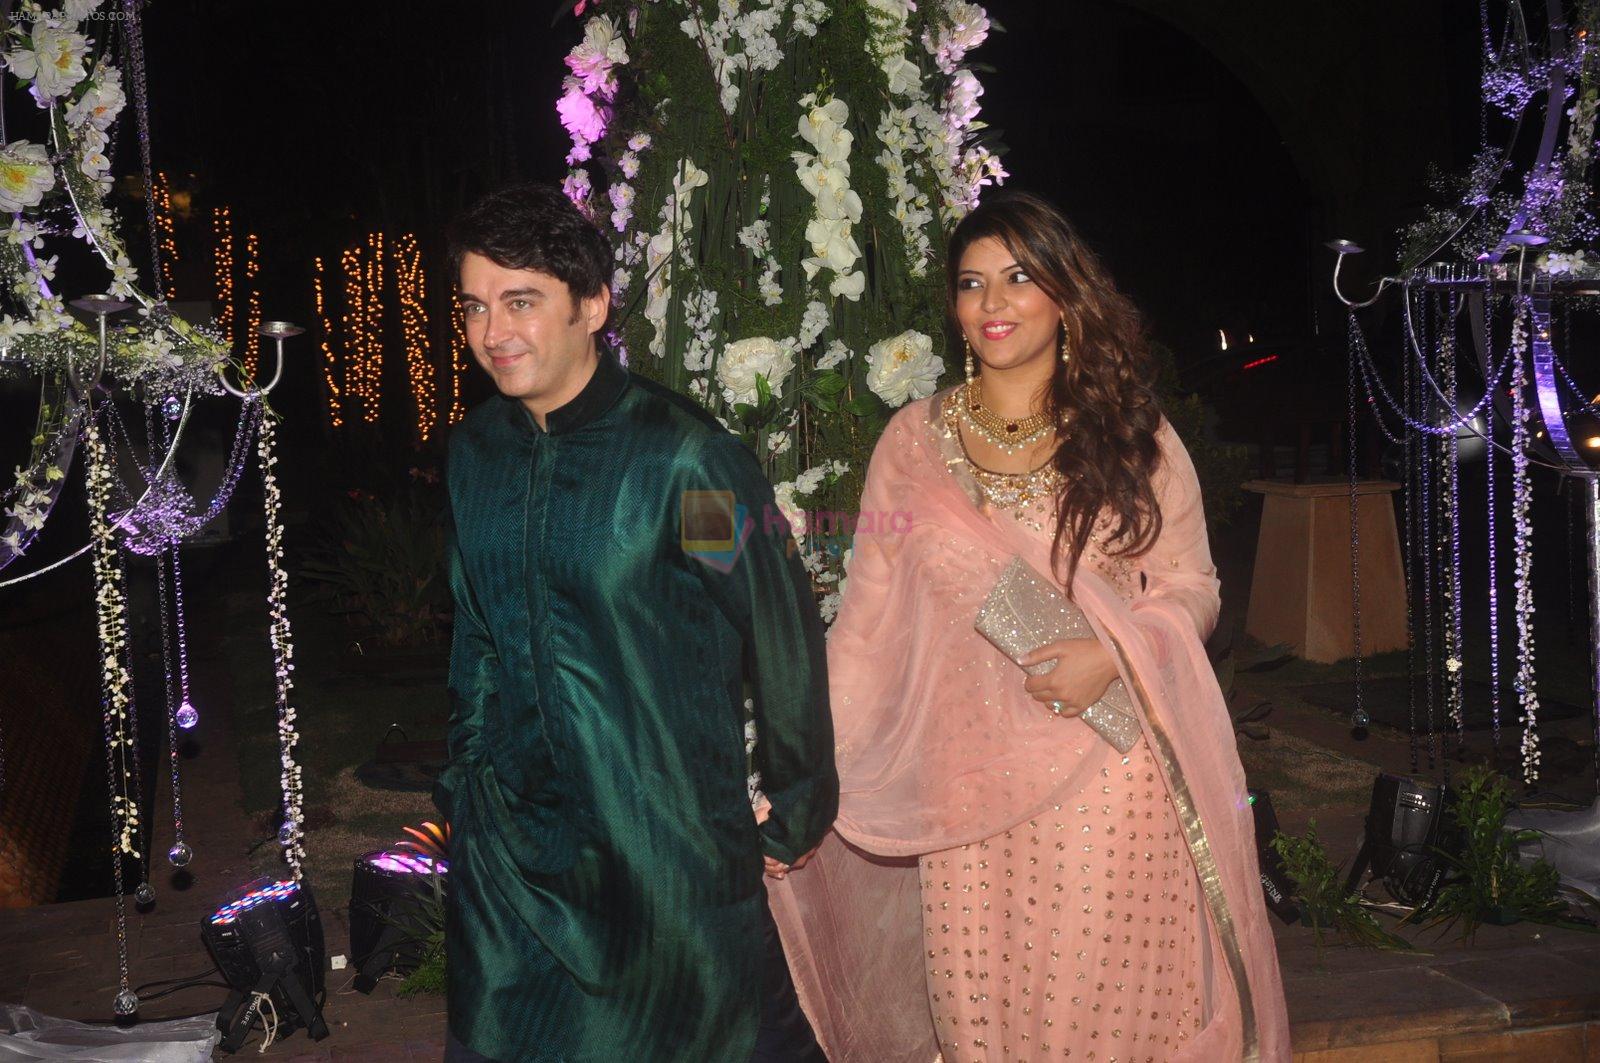 Jugal Hansraj at Sangeet ceremony of Riddhi Malhotra and Tejas Talwalkar in J W Marriott, Mumbai on 13th Dec 2014